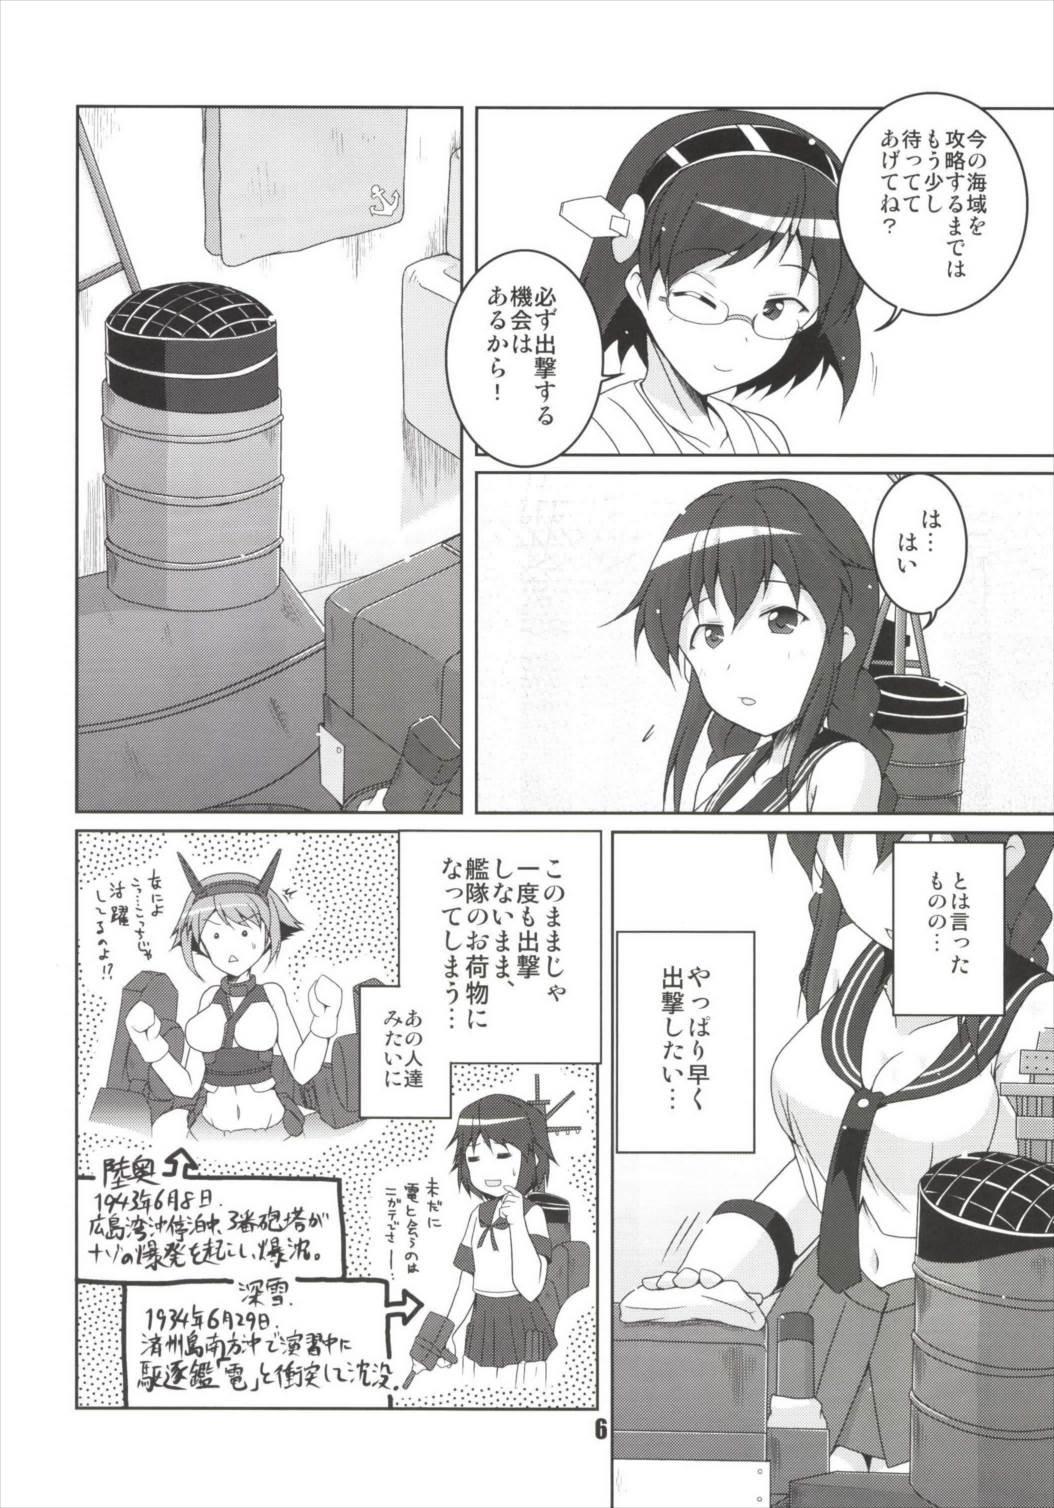 Cutie Noshiro no Deban wa Mada desu ka? - Kantai collection Lesbian Sex - Page 6